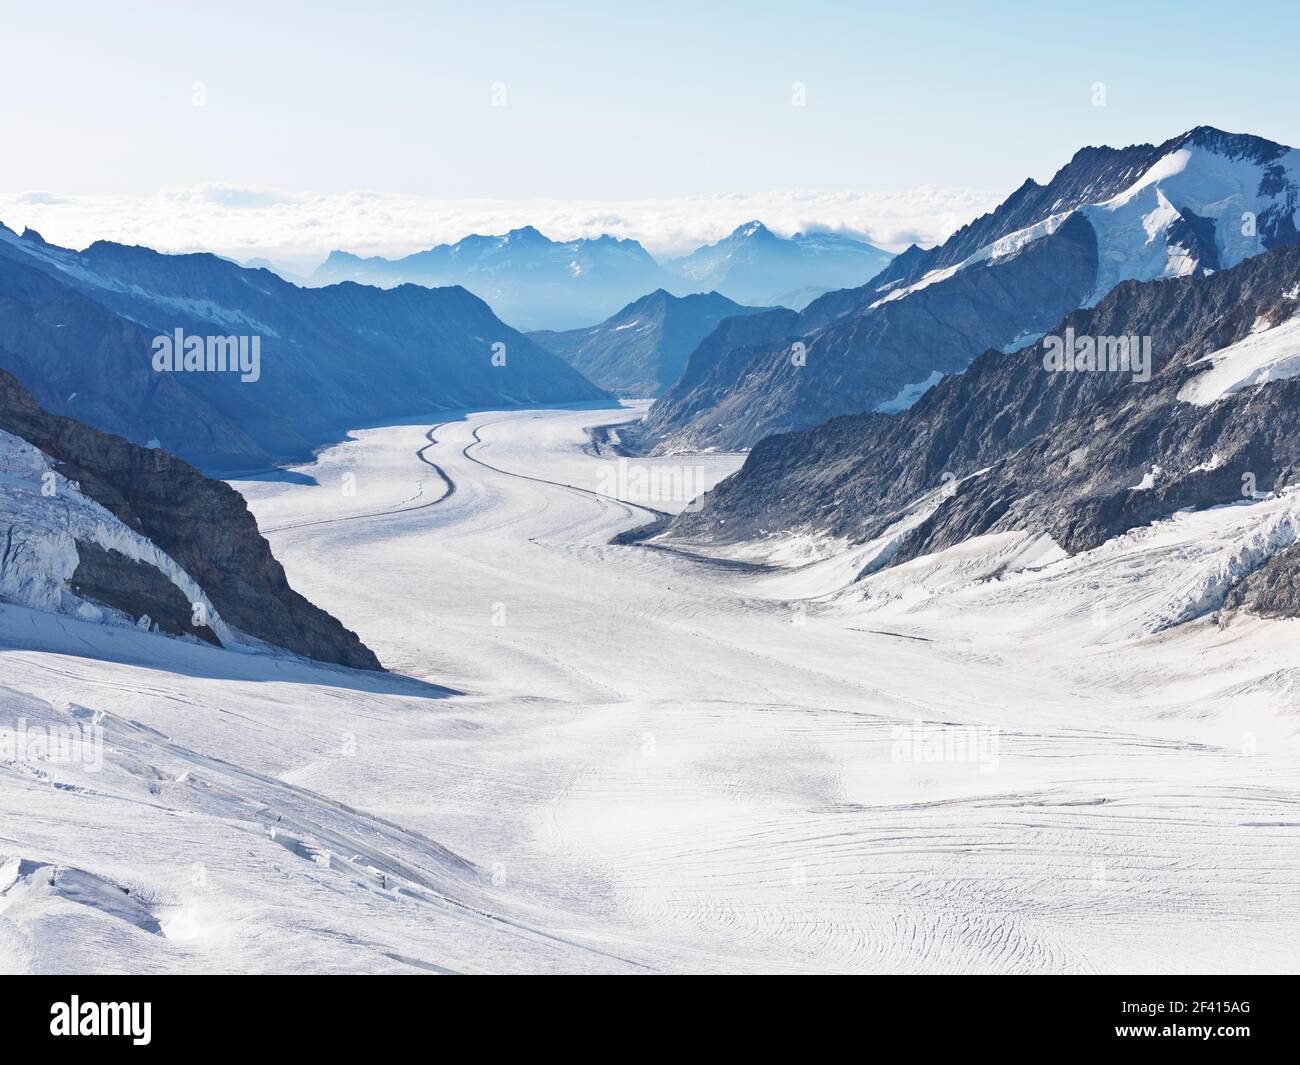 Der große Aletschgletscher, mit 22 km der längste Eisbach der Alpen, beginnt am Jungfraujoch-Gipfel Europas Stockfoto